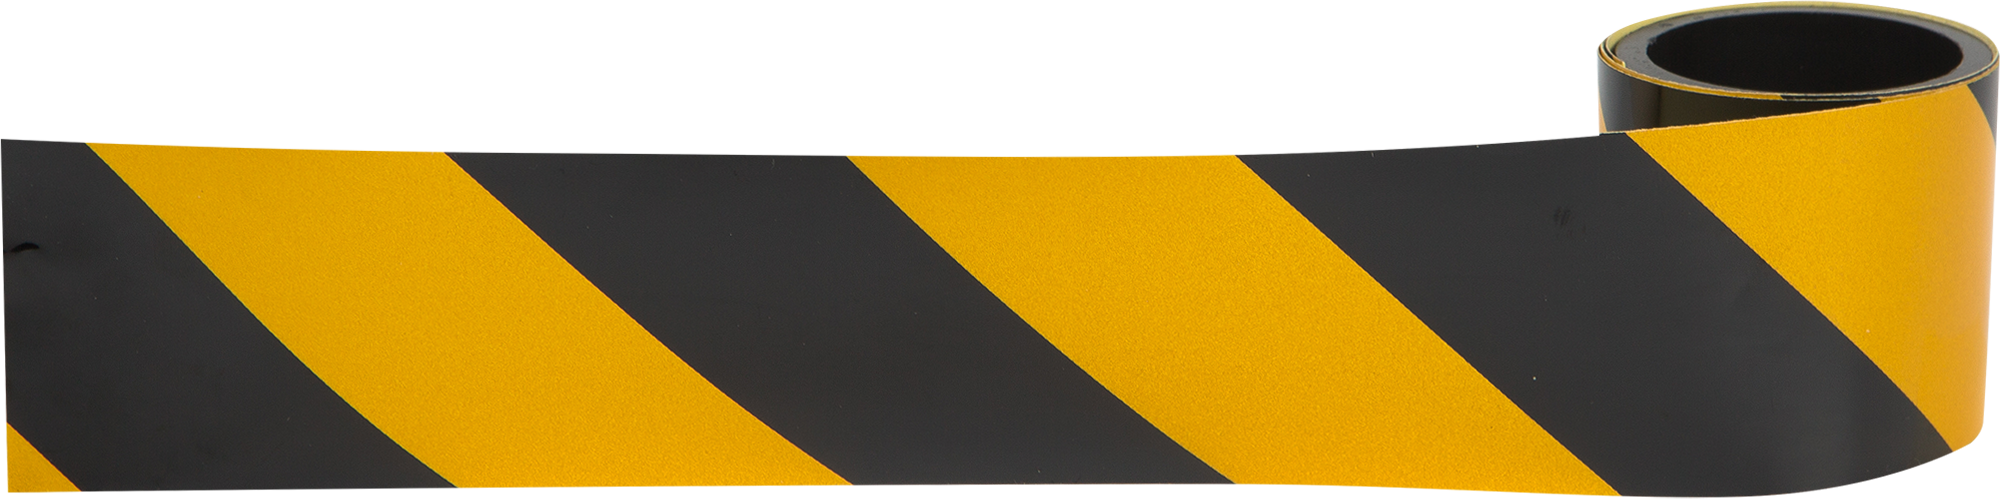 13514334 Лента светоотражающая самоклеящаяся 100х5 см цвет жёлто-чёрный STLM-0003247 DM REFLECTIVE MATERIALS